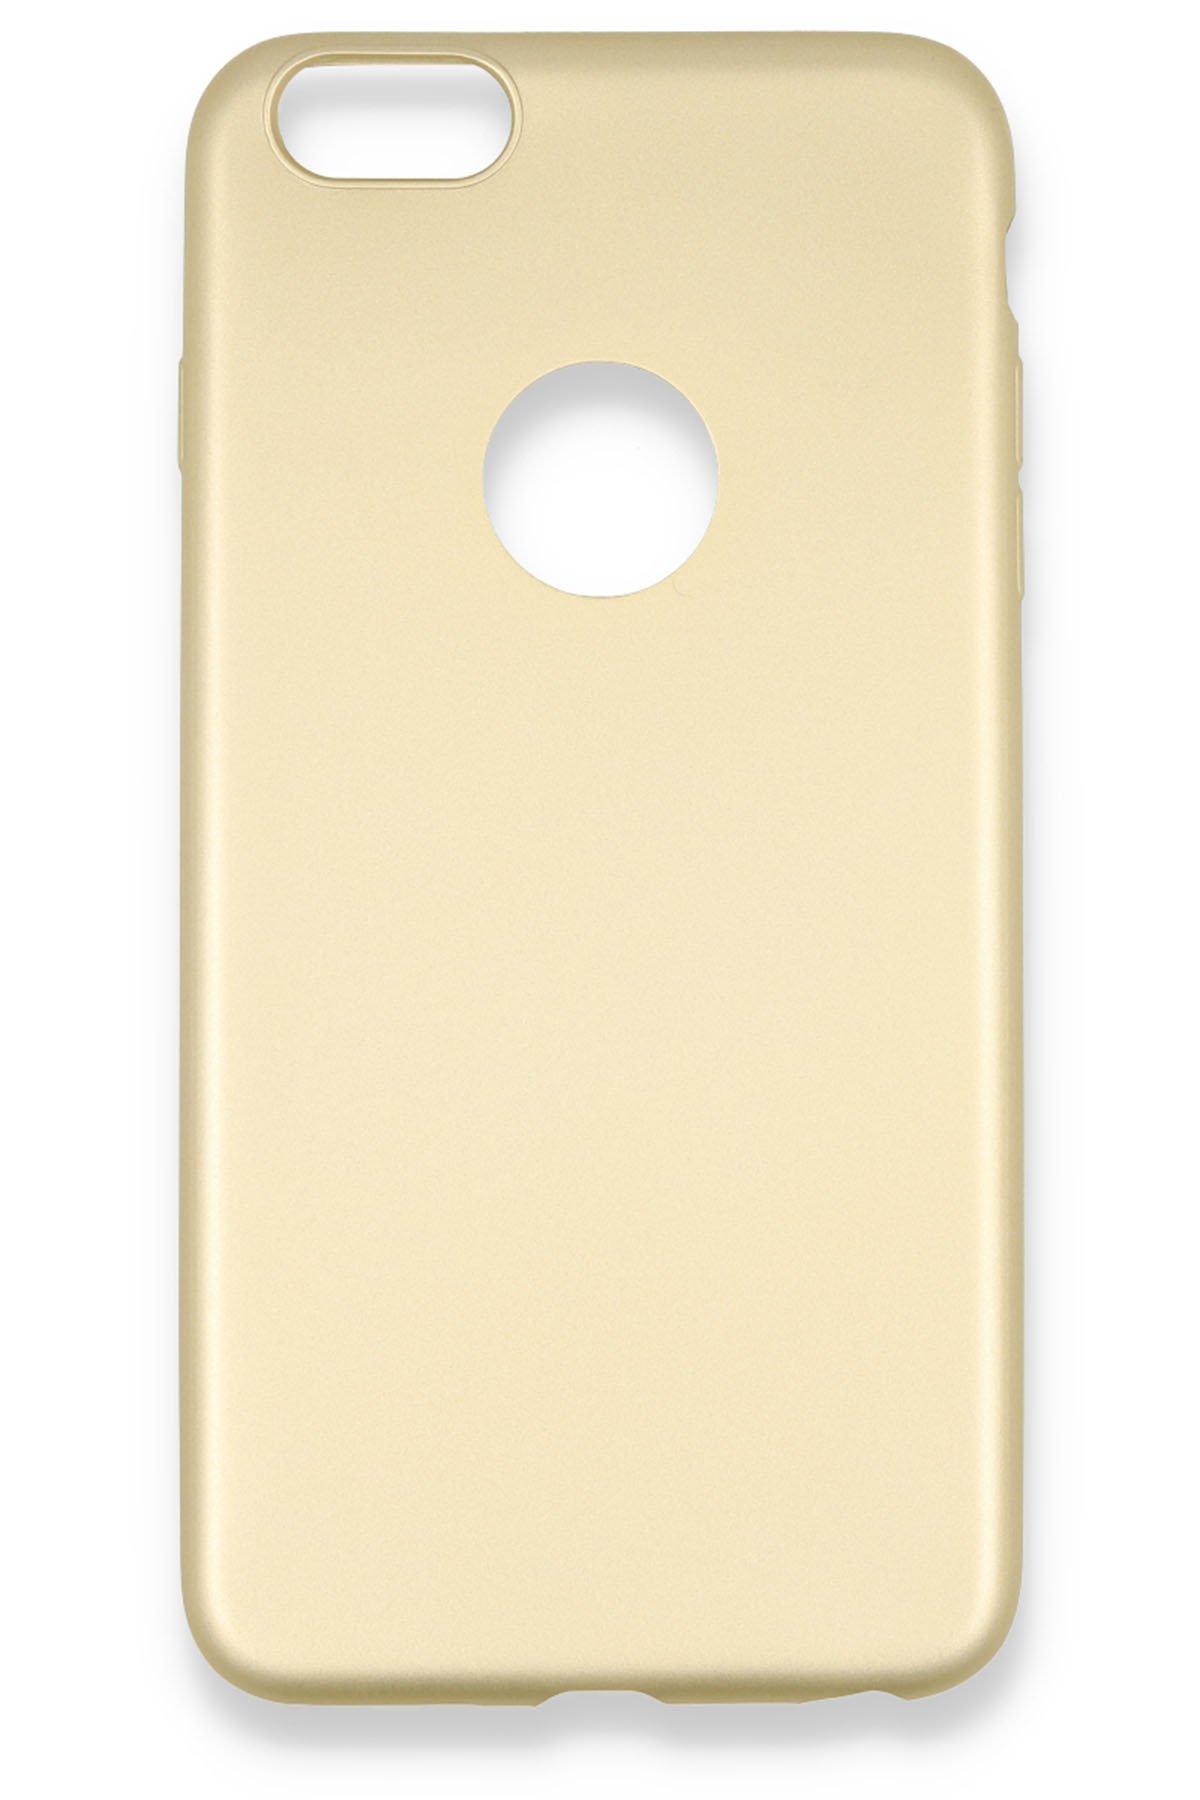 Newface iPhone 6 Plus Kılıf Sofya Yüzüklü Silikon Kapak - Lacivert